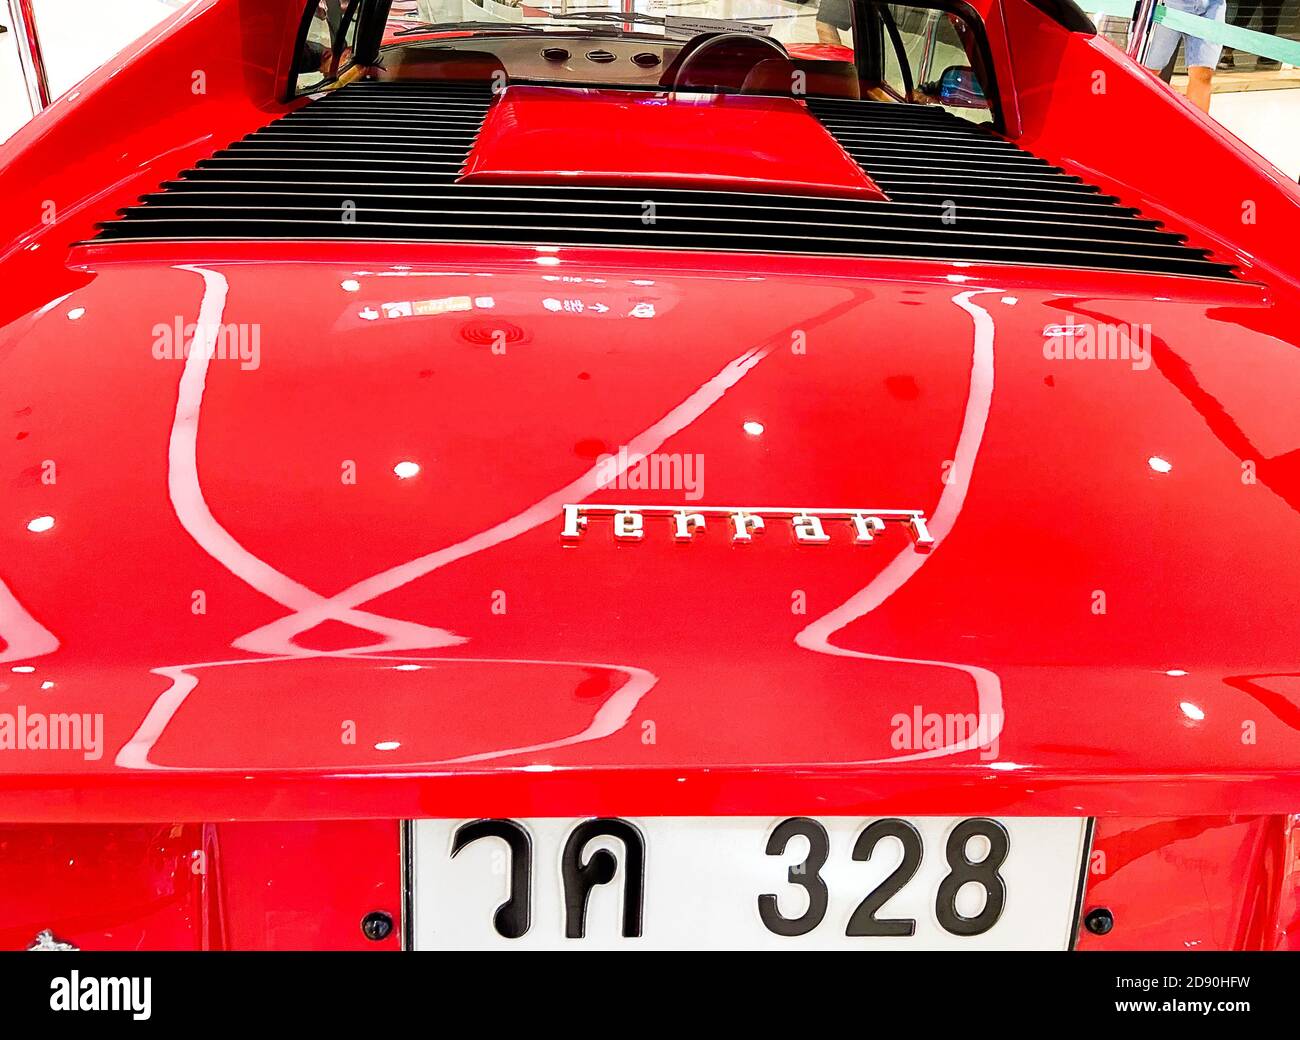 Rückansicht des roten Fahrzeugs wurde in Italien hergestellt Stockfoto